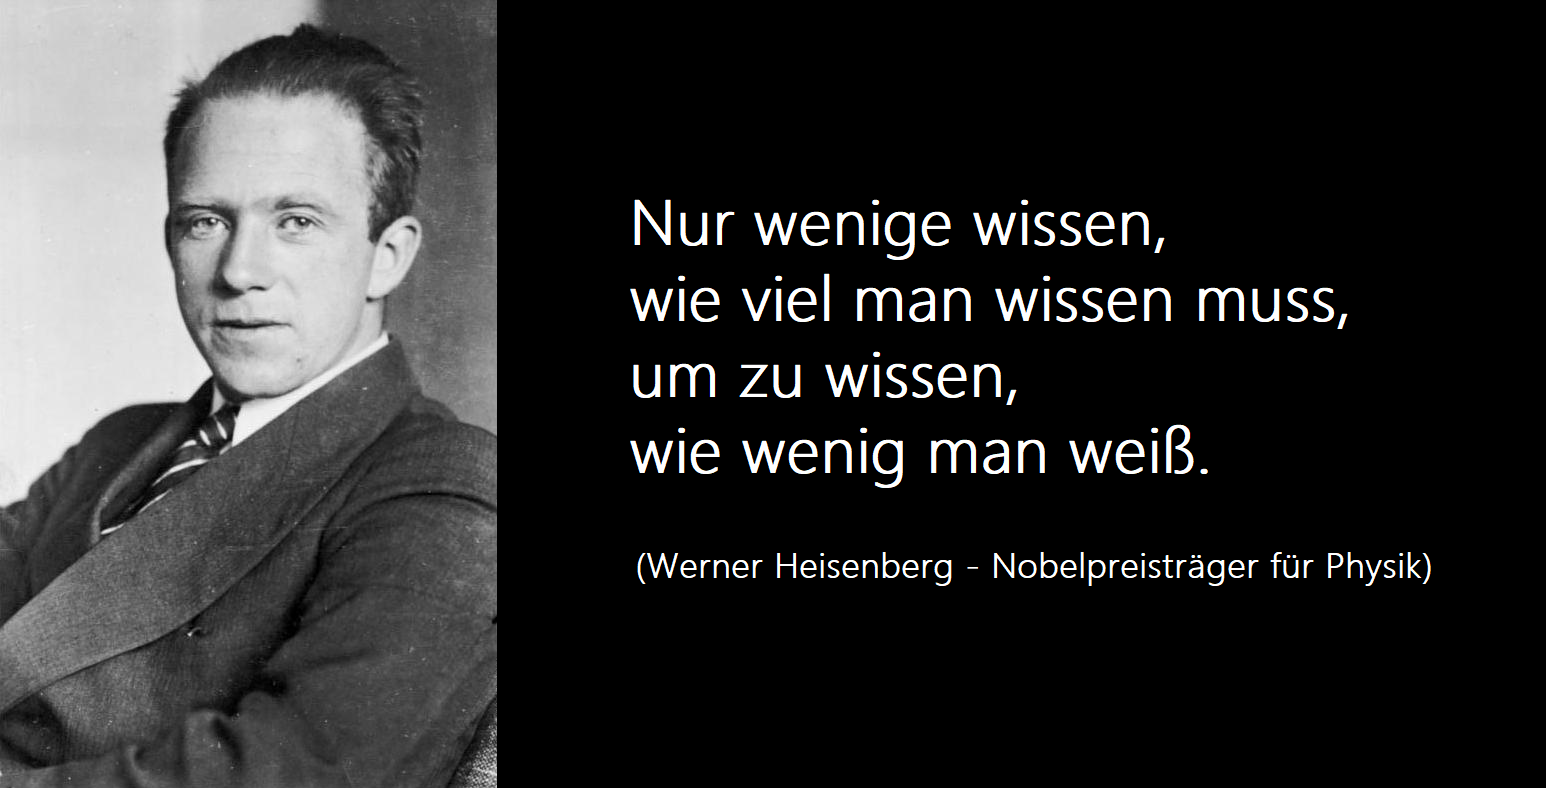 Werner Heisenberg vereint Wissenschaft mit dem Glauben an Gott